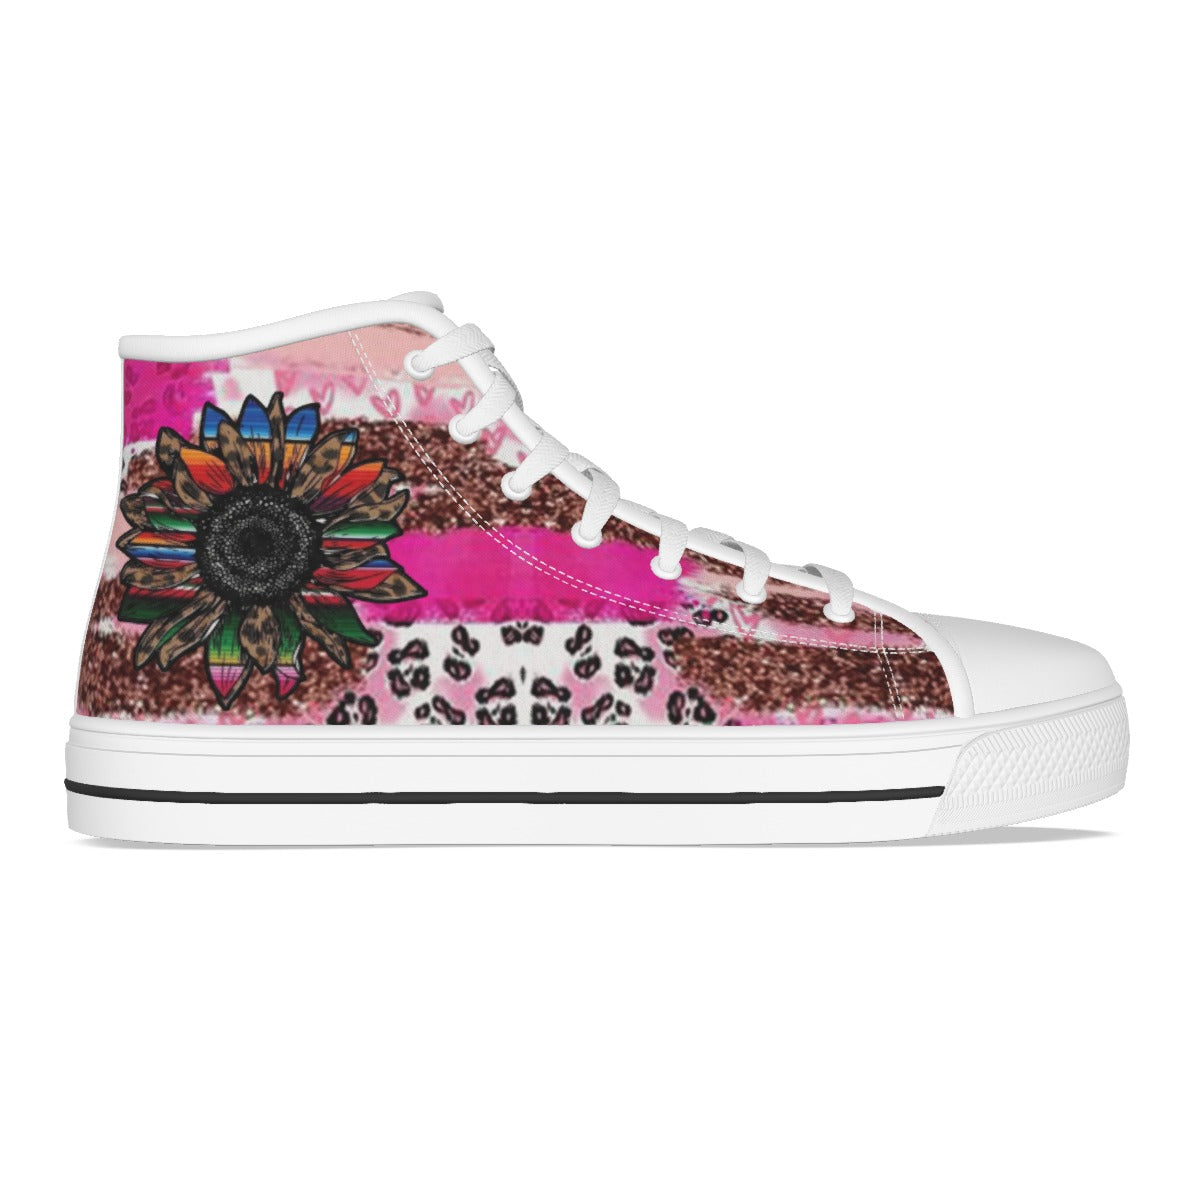 Personalized Women's Canvas Shoes, Flower Shoes, Hippie Shoes, Bohemian Shoes, Cowboy Shoes.